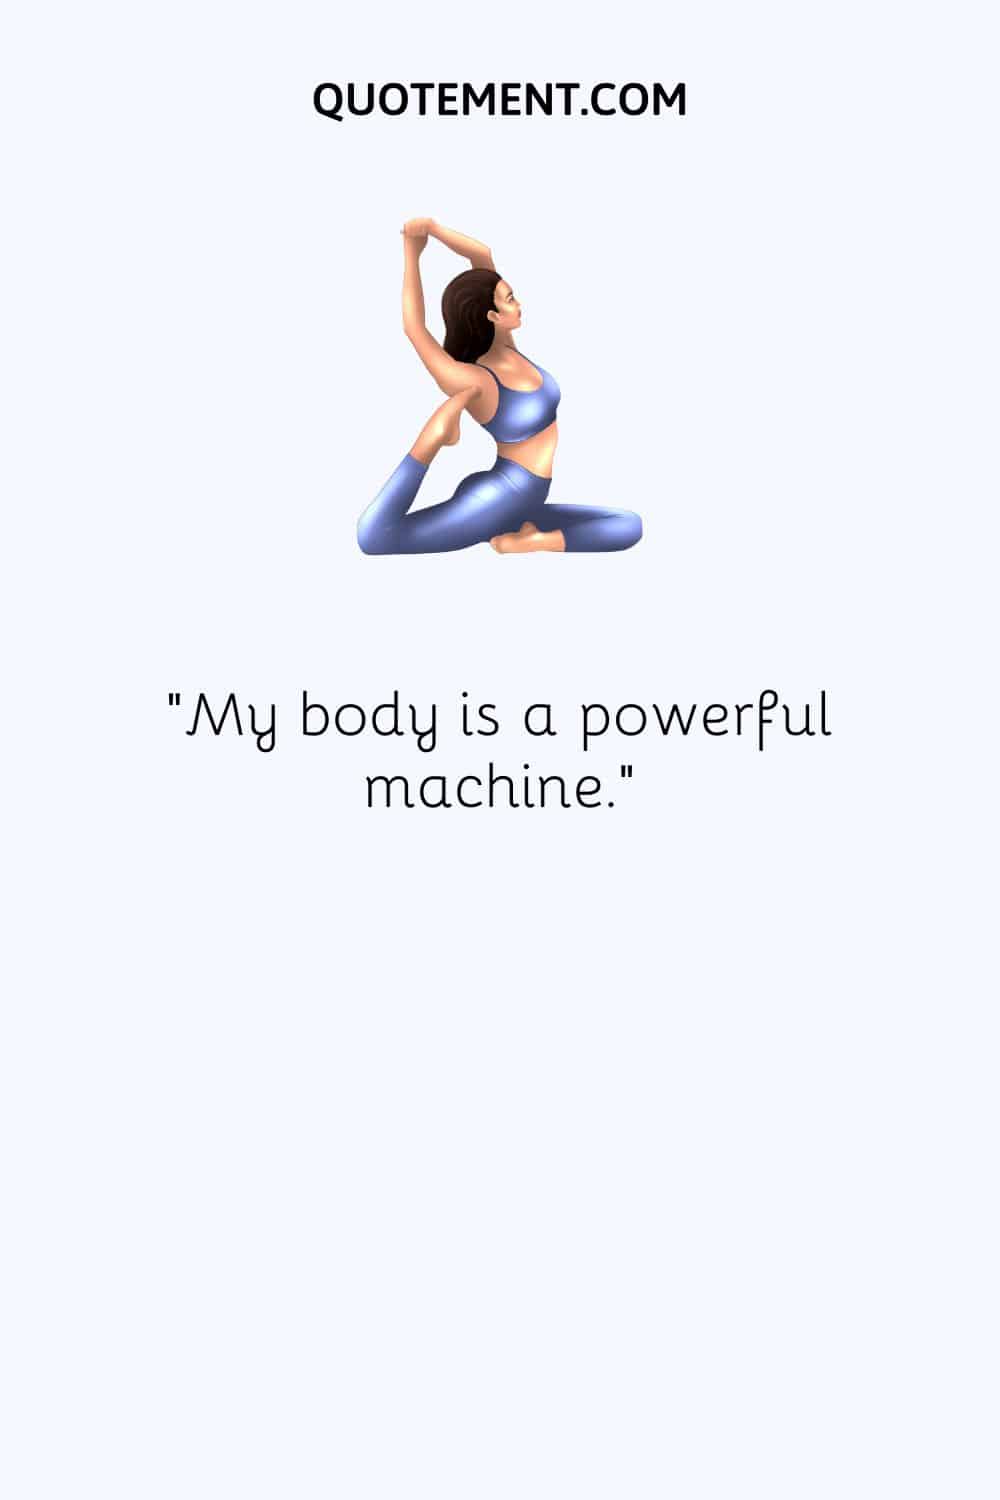 My body is a powerful machine